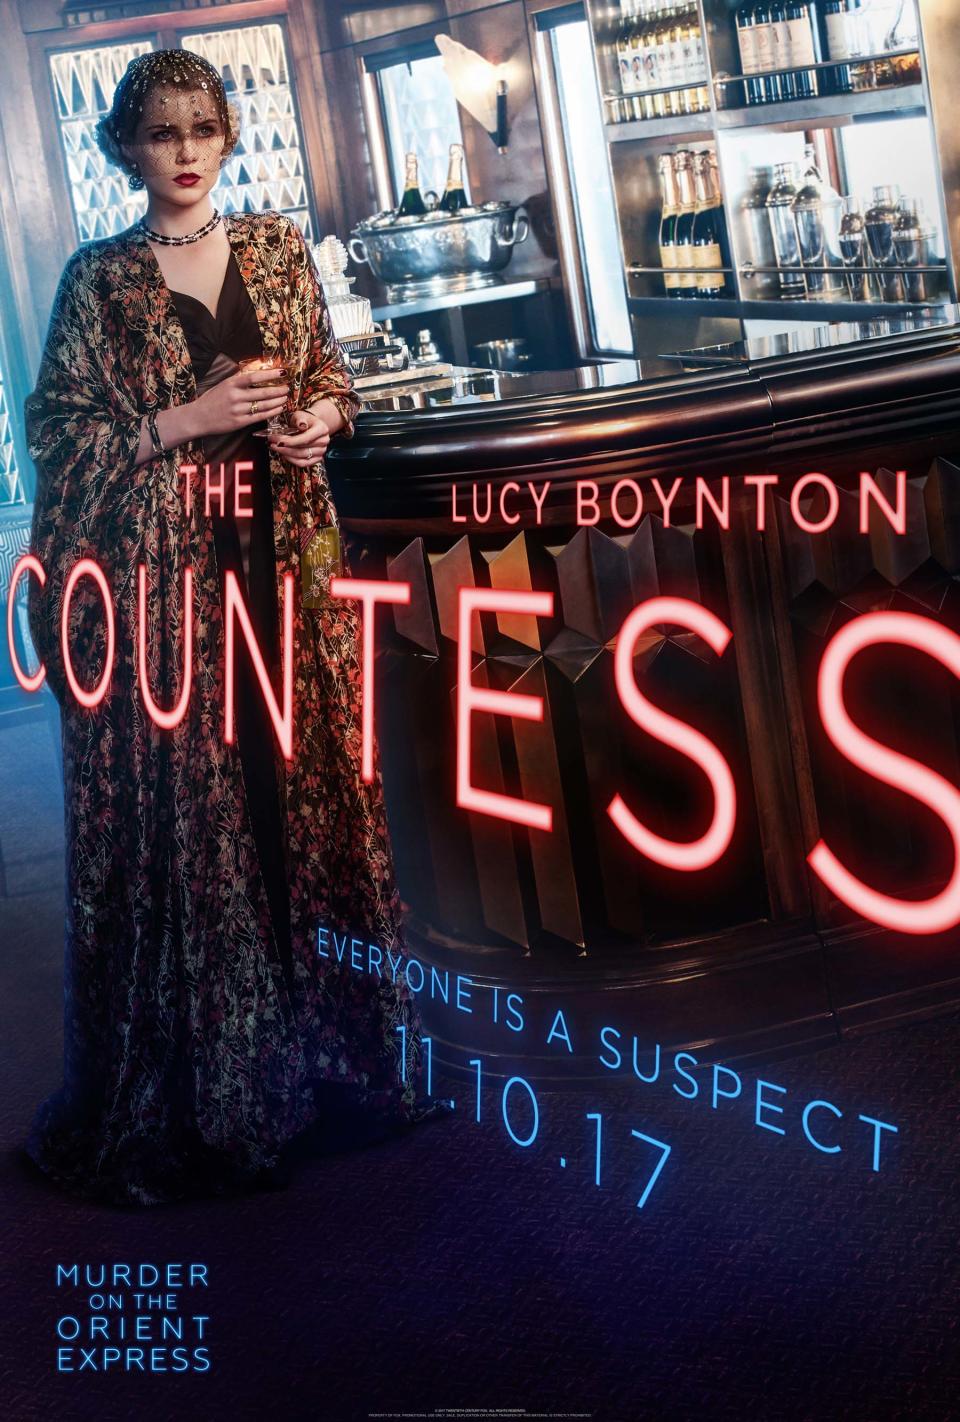 Lucy Boynton as Countess Andrenyi